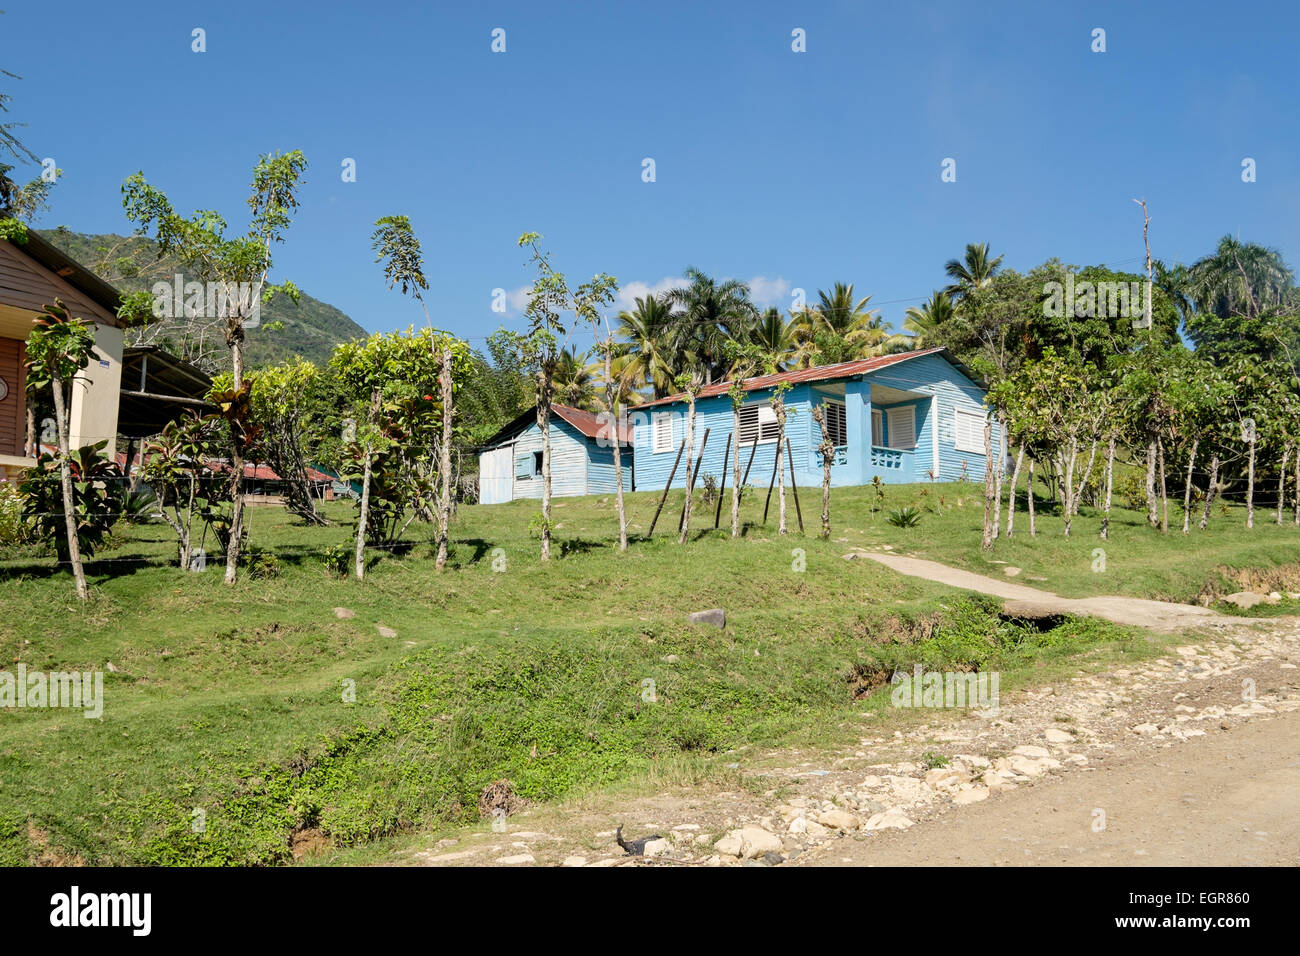 Maison en bois avec un toit en tôle ondulée et dépendance pour la cuisson dans un village rural. République dominicaine, Caraïbes Banque D'Images